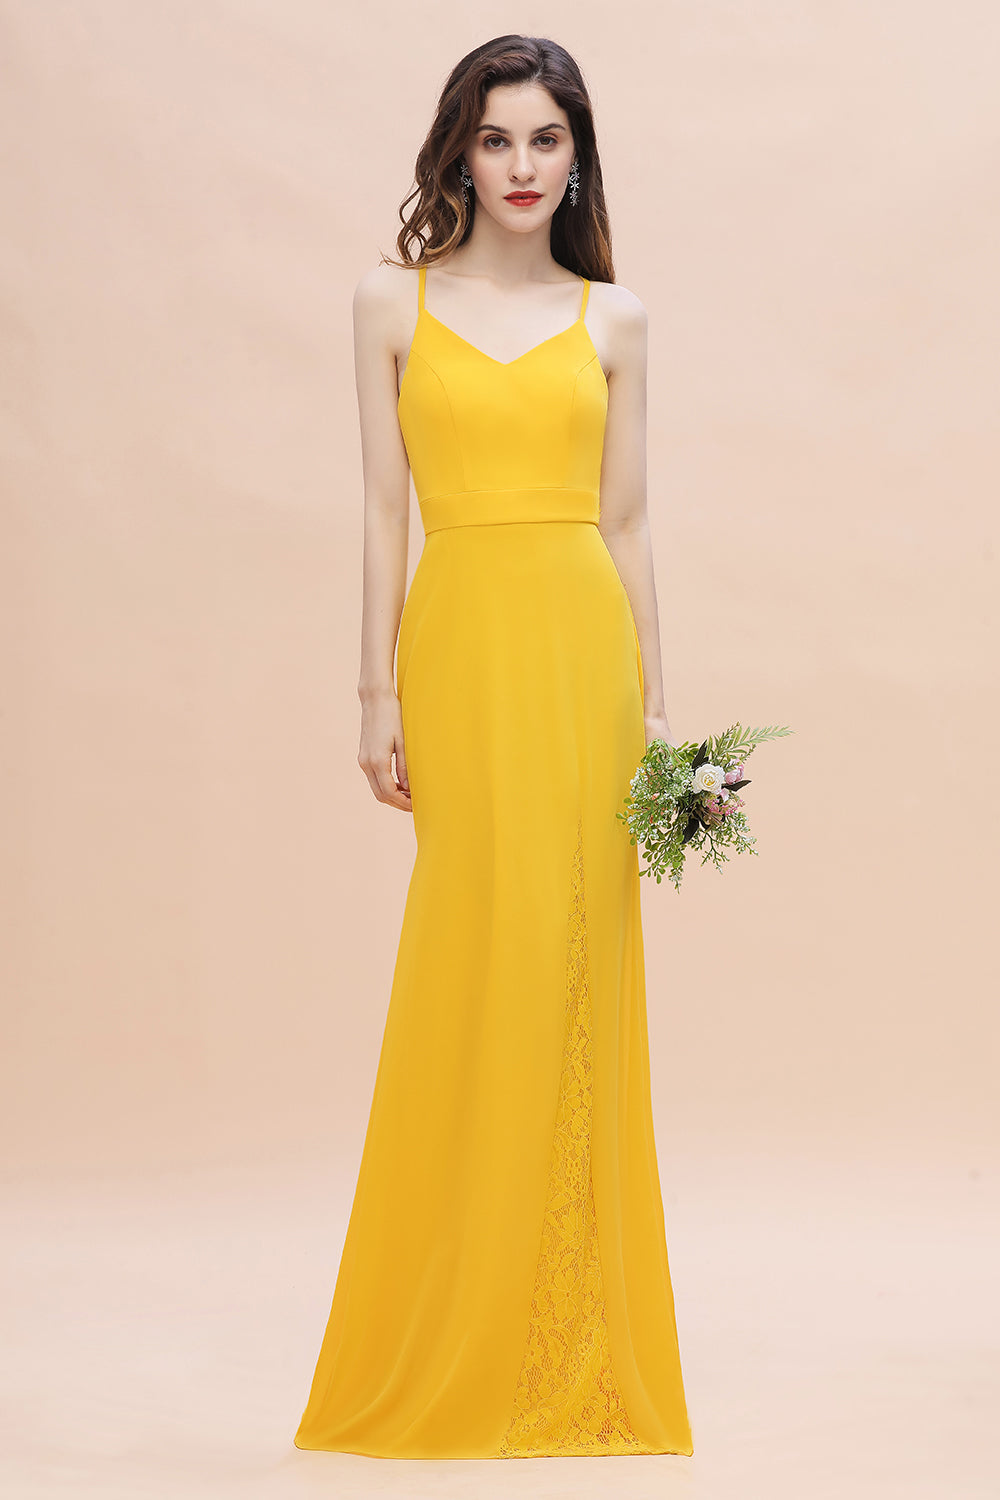 Bestellen Sie Brautjungfernkleider Lang Gelb online bei babyonlinedress.de. Günstige Kleider Partykleider mit hocher Qualität bekommen.